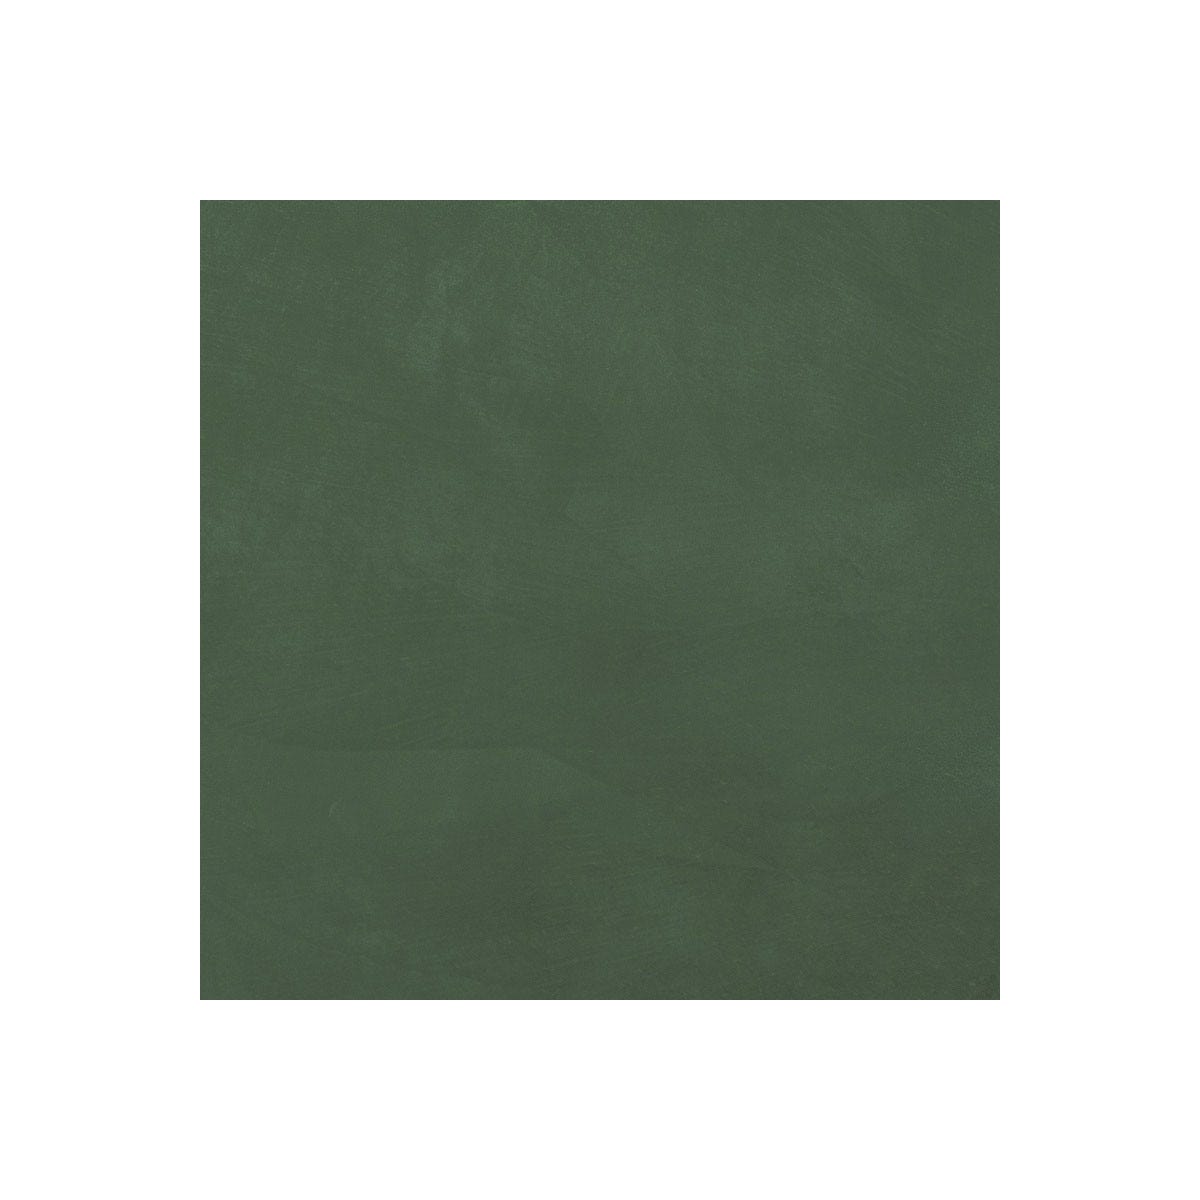 Béton Ciré Sol en - Primaire et vernis de finition inclus - 10 m² (en 2 couches) - Carambole Vert - ARCANE INDUSTRIES 1